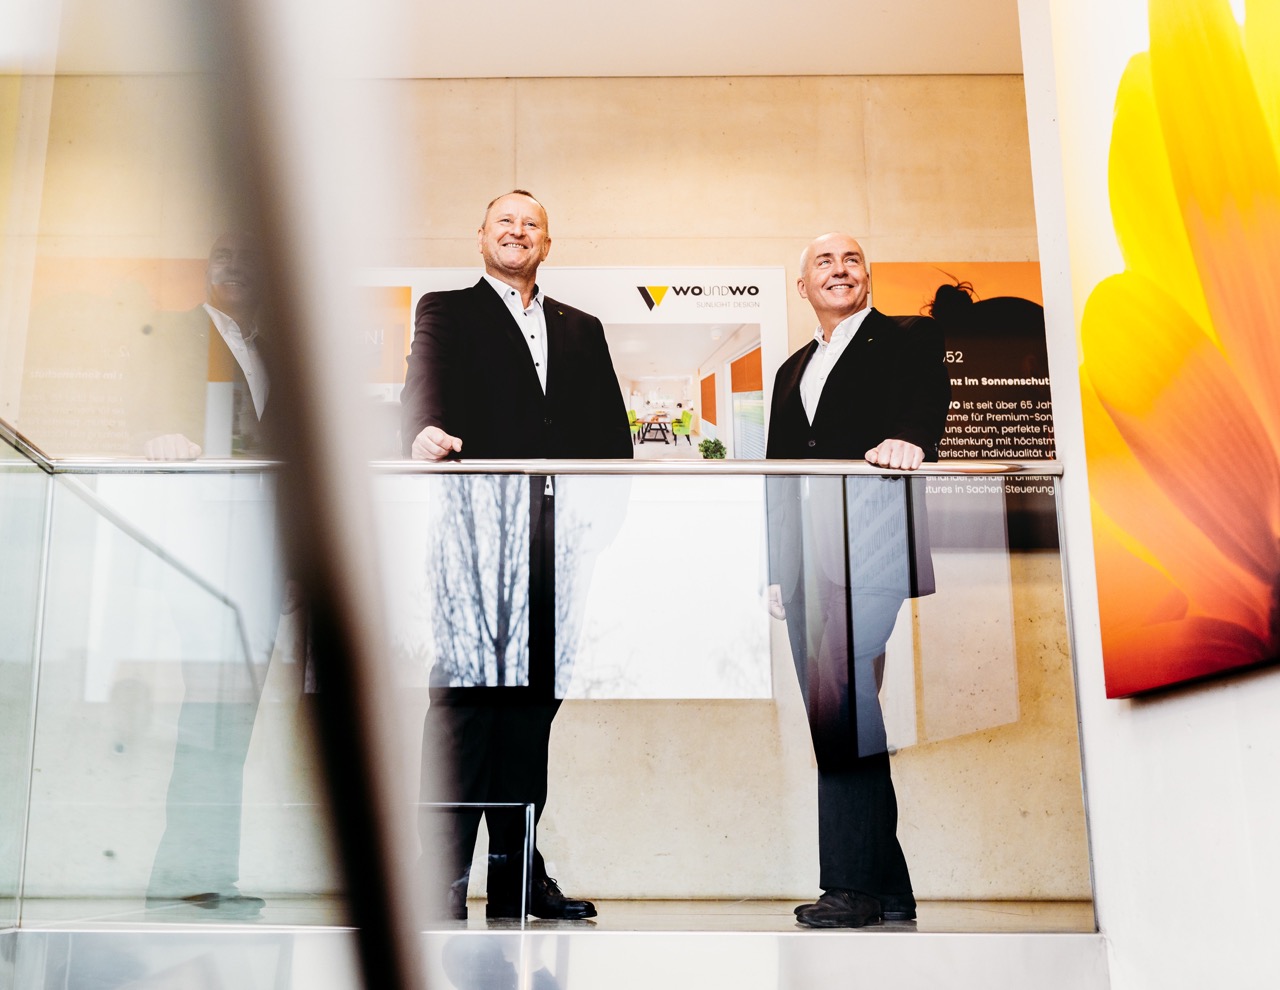 Die WOUNDWO-Geschäftsführer Wolfgang Kuss und Alexander Foki präsentieren das neue Innovationsquartett, welches das Produktportfolio des steirischen Sonnenschutzproduzenten aufwertet. (Foto: Mario Sudy)